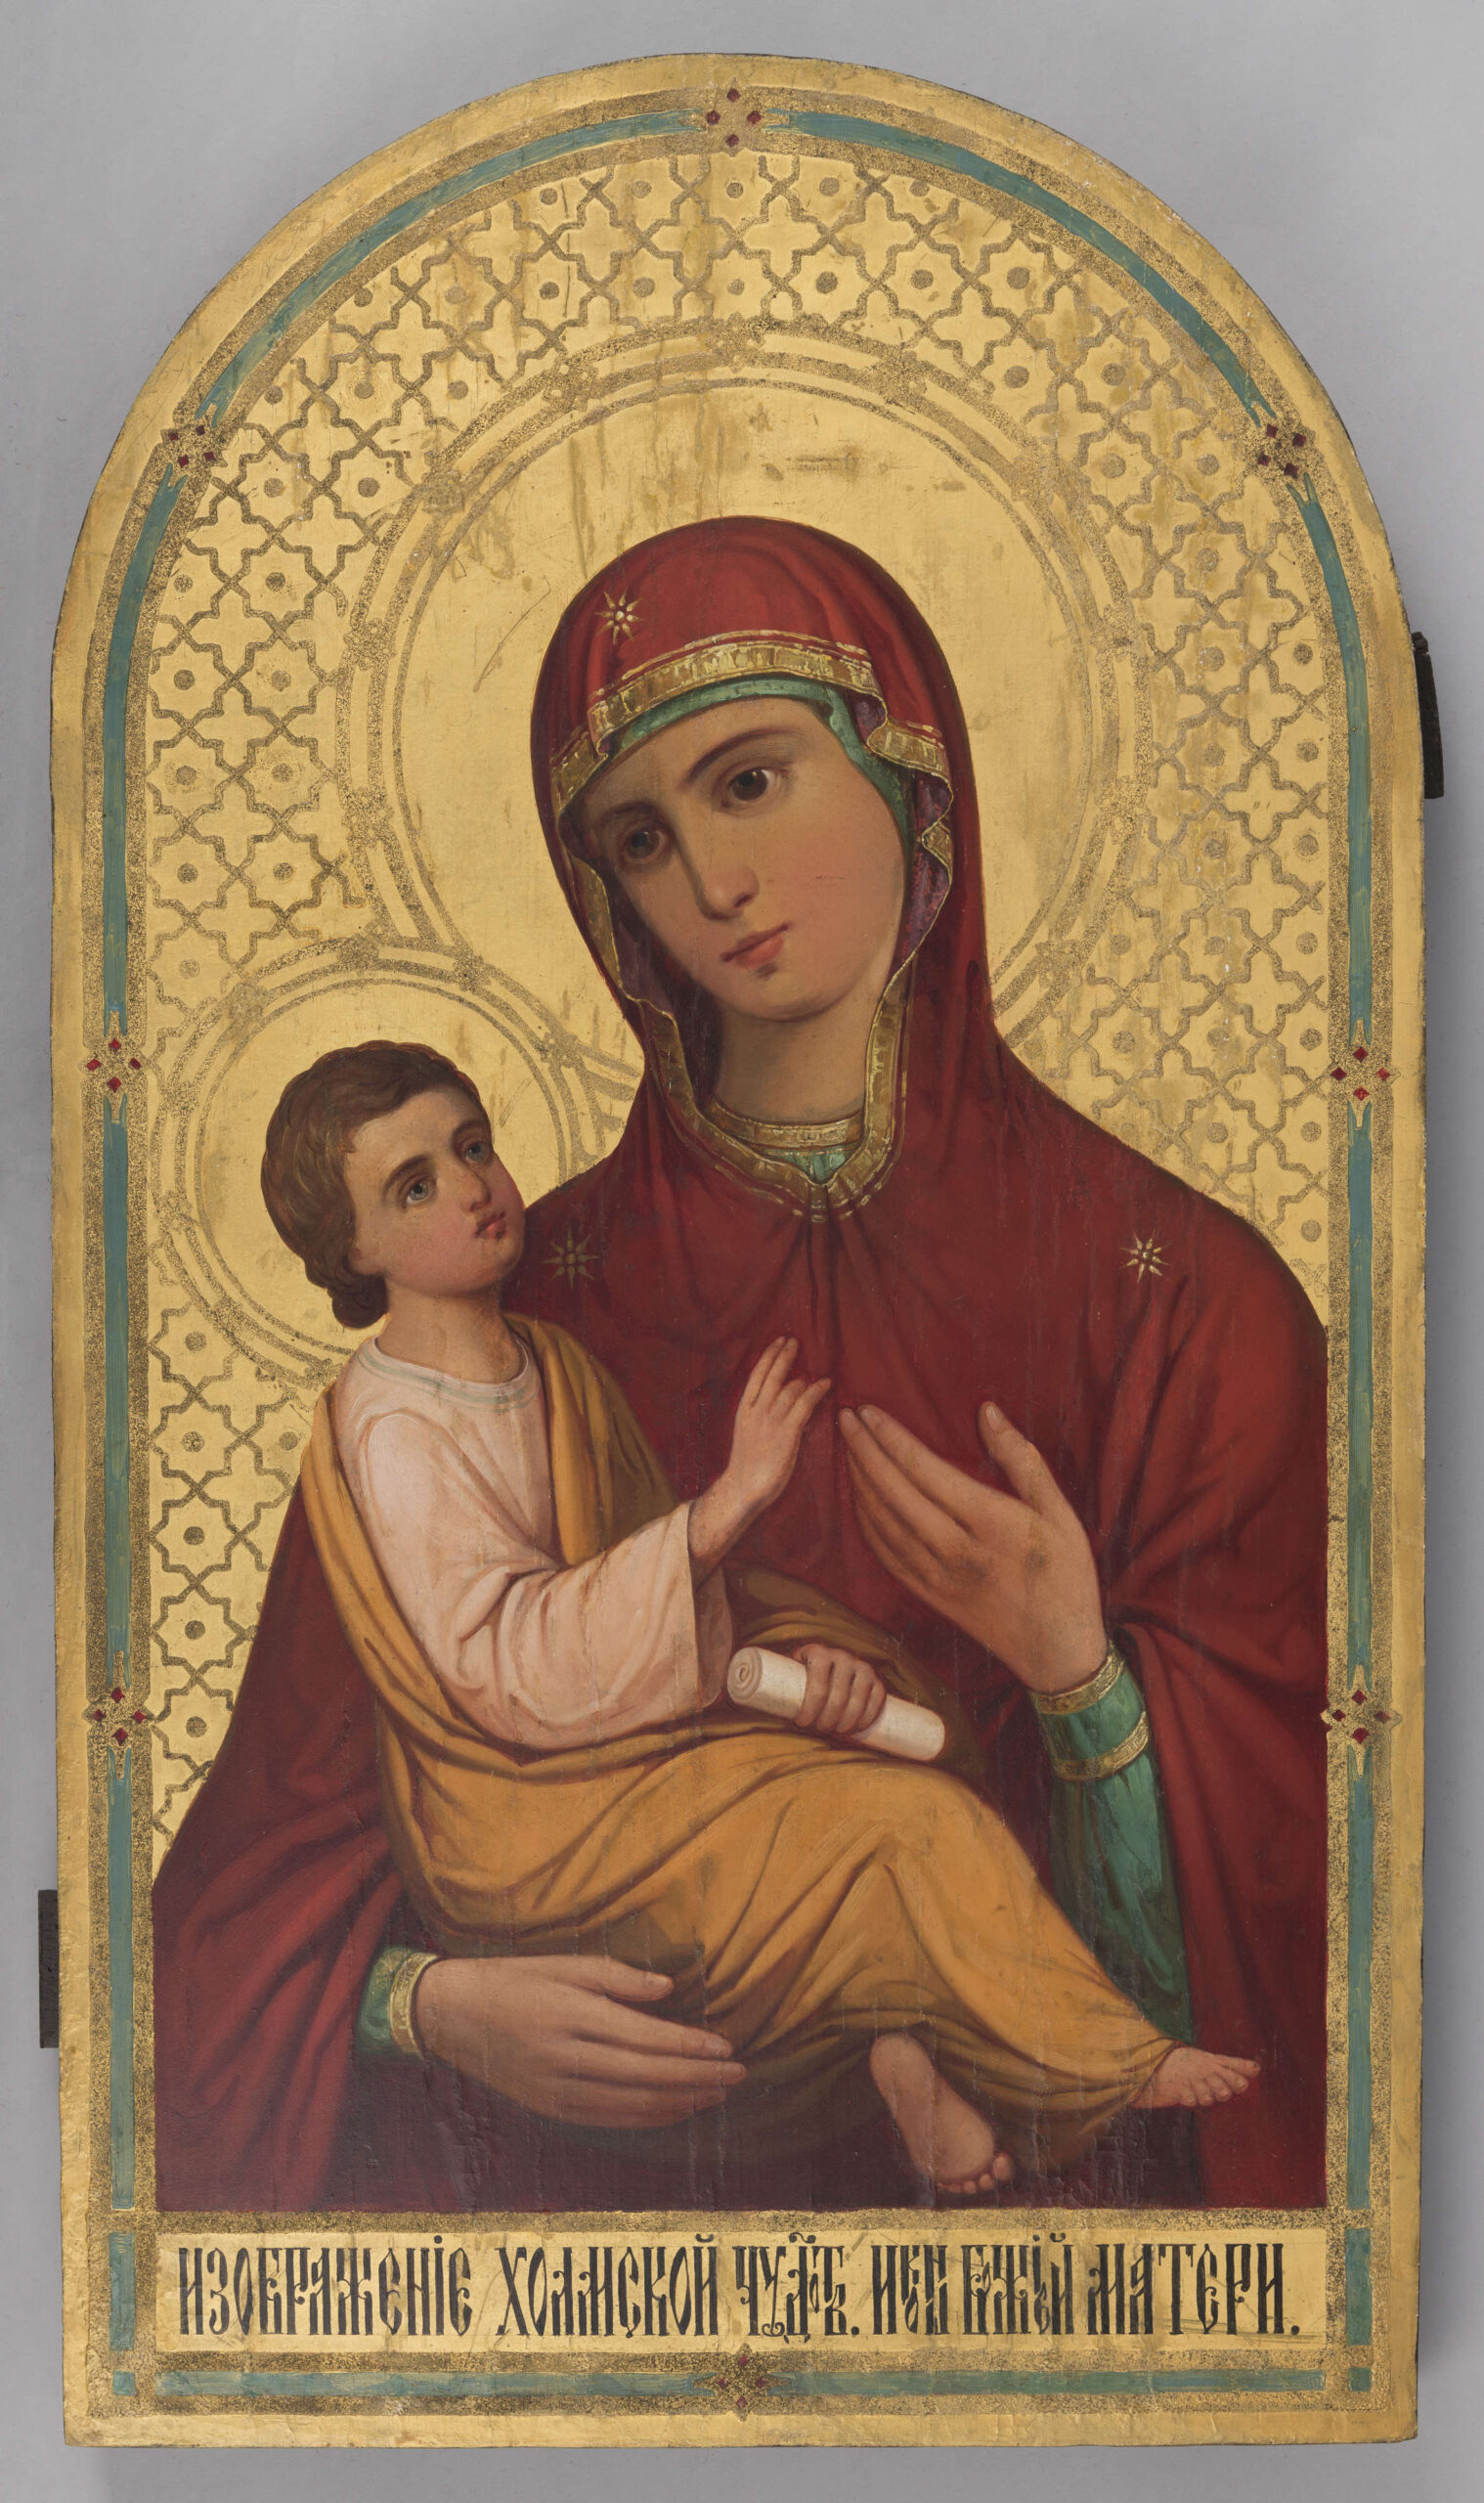 Matka Boża Chełmska – wizerunek Maryi w typie Dexiokratusa (trzymająca Dzieciątko na prawym ramieniu). Maryja ukazana jest w ujęciu do pasa; ubrana jest w zieloną szatę spodnią wykończoną złotymi lamówkami, zielony czepiec oraz czerwony maforion, wykończony przy twarzy złotą lamówką, spięty przy szyi, ze złotymi gwiazdami na czole i ramieniu (symbol dziewictwa Maryi). Maryja lekko pochyla głowę w stronę Chrystusa, lewą dłonią na niego wskazuje. Twarz ma owalną, o regularnych rysach, oczy duże, zapatrzone w dal;  ma zamyślony wyraz twarzy. Chrystus spoczywa swobodnie na ramieniu Maryi: spogląda na matkę poważnie, prawą dłonią ją błogosławiąc, w lewej trzyma zwój. Ubrany jest w jasny chiton i złocisty himation. Lewą nogę ma charakterystycznie odgiętą, tak, że stópka jest widoczna od spodu.
Głowy obojga otaczają gładkie złocone nimby, wyznaczone potrójną linią, ozdobioną regularnie rozmieszczonymi rozetkami. Tło złote (złoto drukarskie? ), zdobione powtarzającym się wypukłym (złoto proszkowe? ) motywem równoramiennego krzyża i zgeometryzowanej rozetki. U dołu na złotym tle widnieje czarny napis cyrylicą: WYOBRAŻENIE CHEŁMSKIEJ CUDOWNEJ IKONY BOZEJ MATKI: 
??????????? XO?MCKO? ???OTB ???? ????? MATEP?
Całość obiega bordiura, na którą składają się: wypukły pas złoty, zielony i znów złoty, ozdabiana regularnie rozmieszczonymi siedmioma geometrycznymi wzorami – rombami-gwiazdkami z czerwonymi kwadratami. Pole obrazowe ma kształt prostokąta zamkniętego od góry łukiem.

Konserwacja: 2009 r.